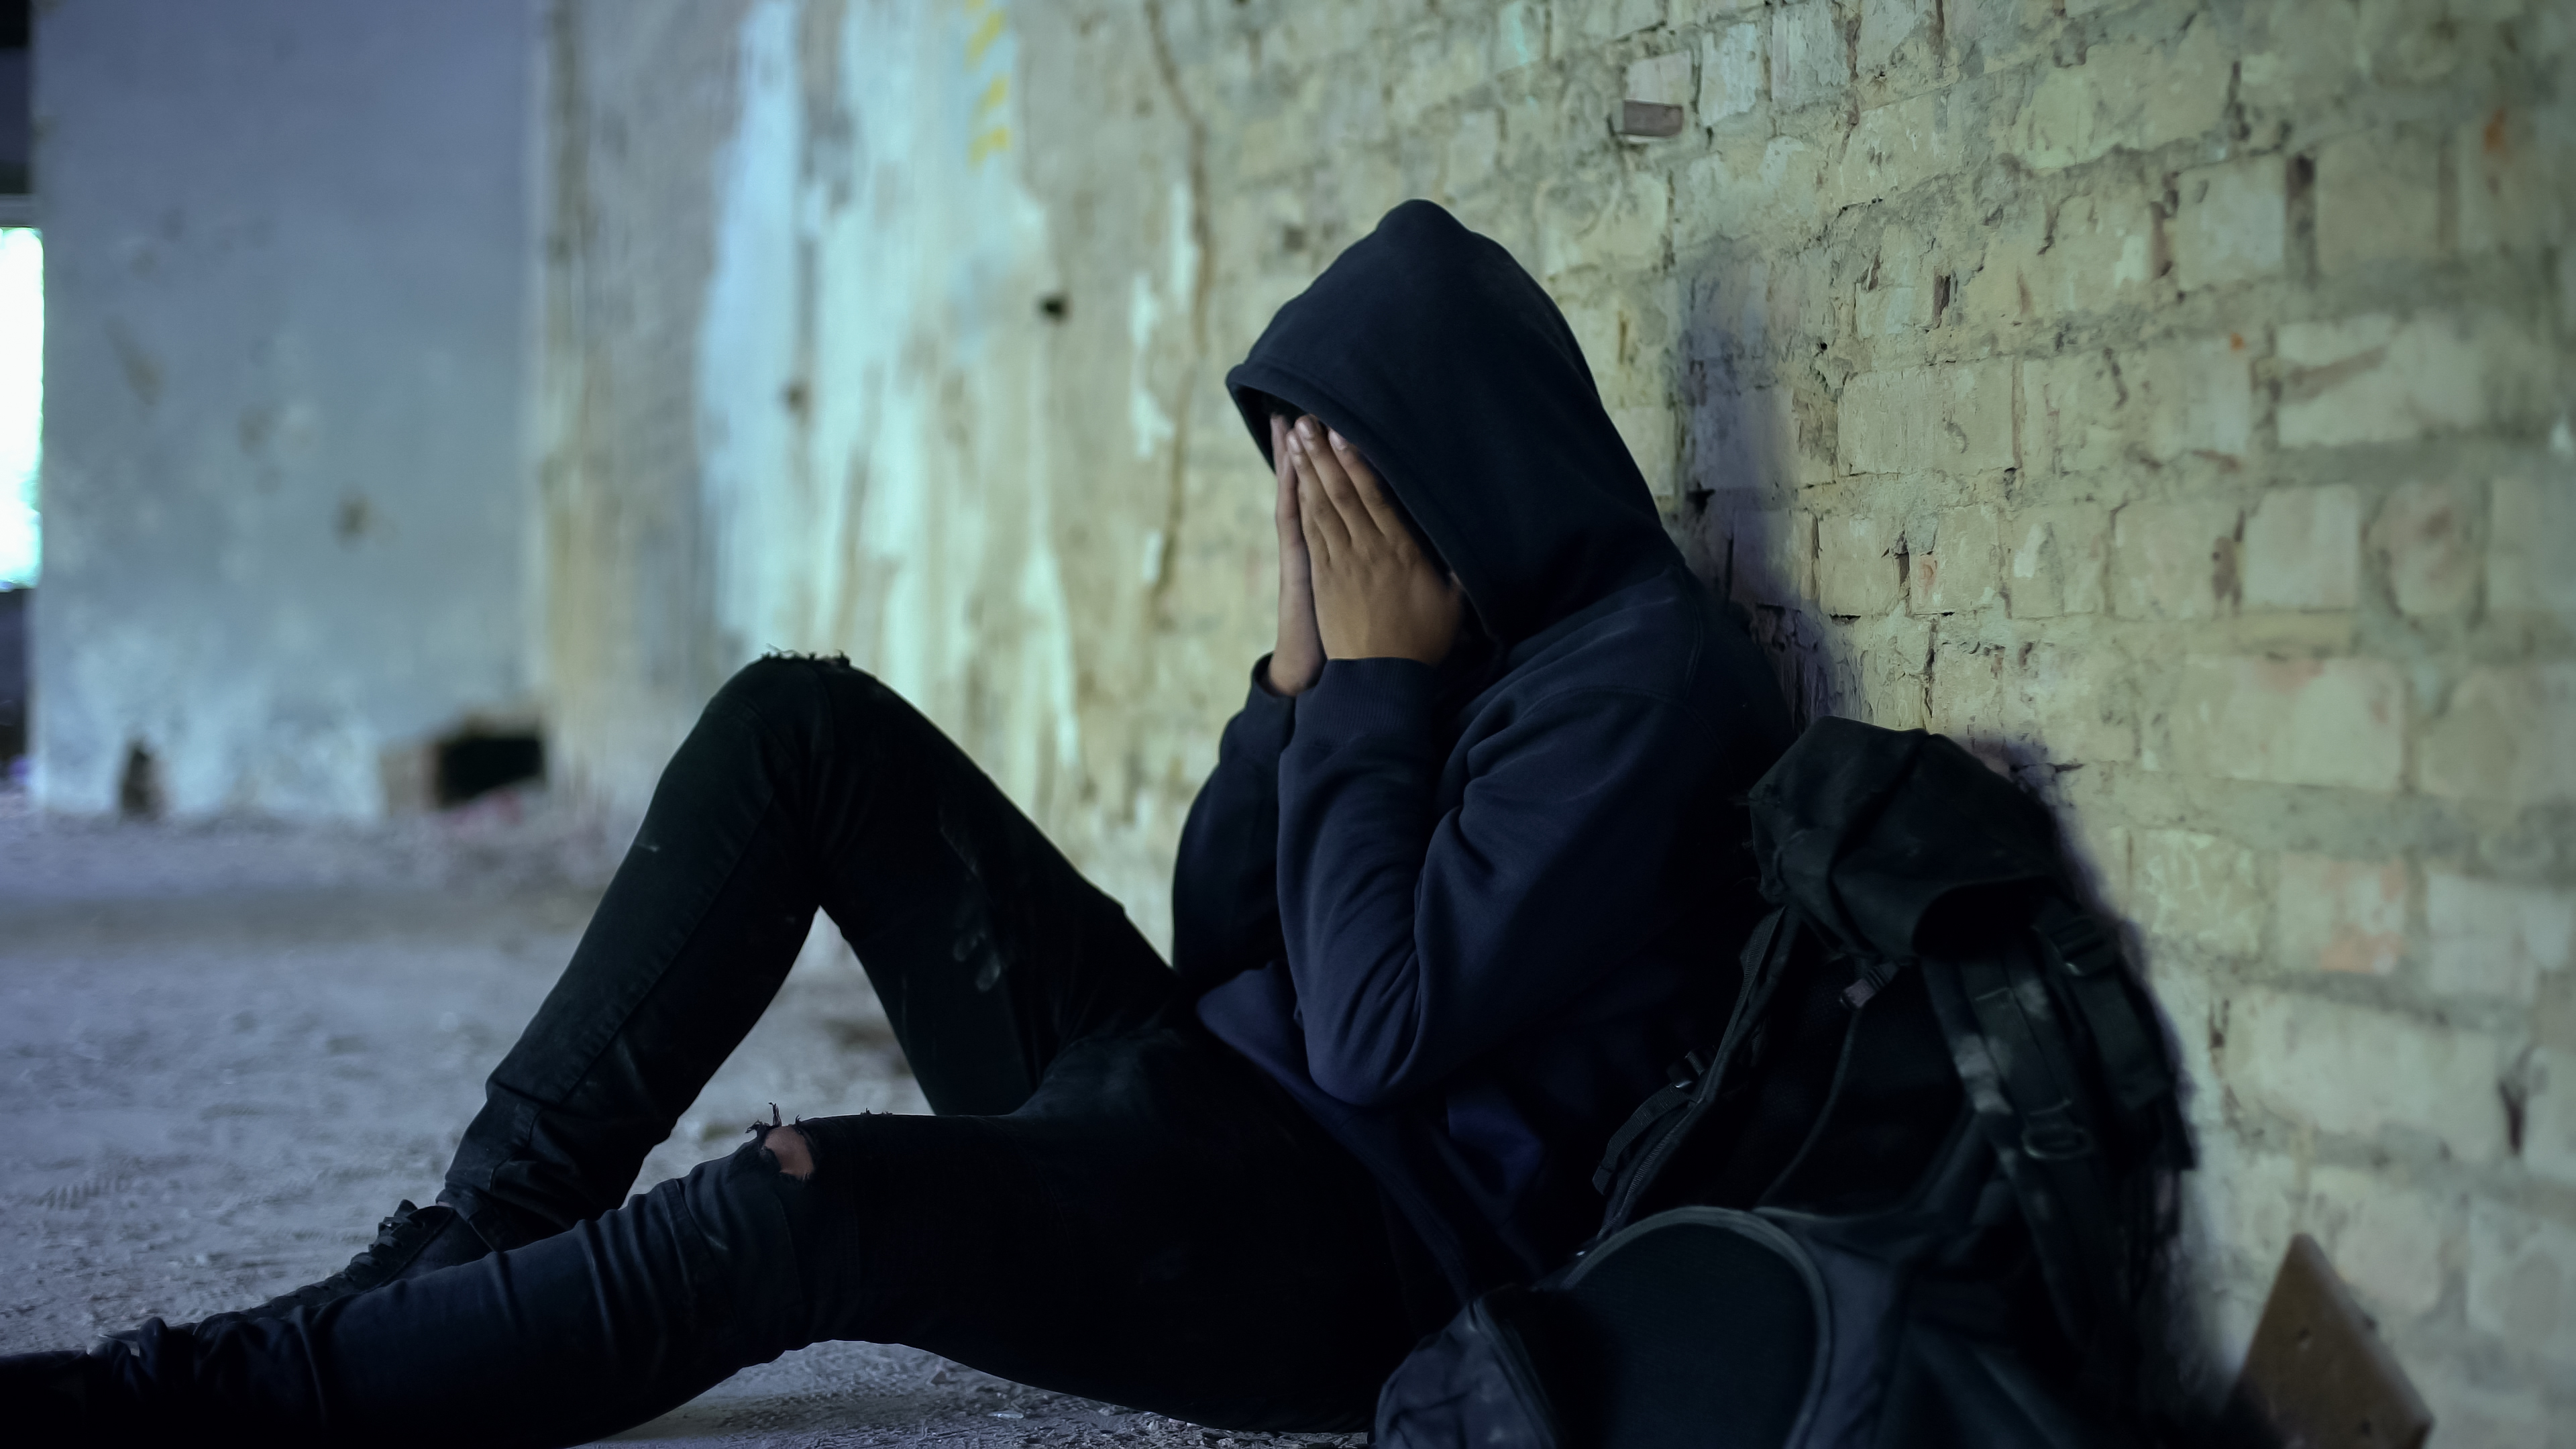 Ein unglücklicher Teenager weint an einem verlassenen Ort | Quelle: Shutterstock